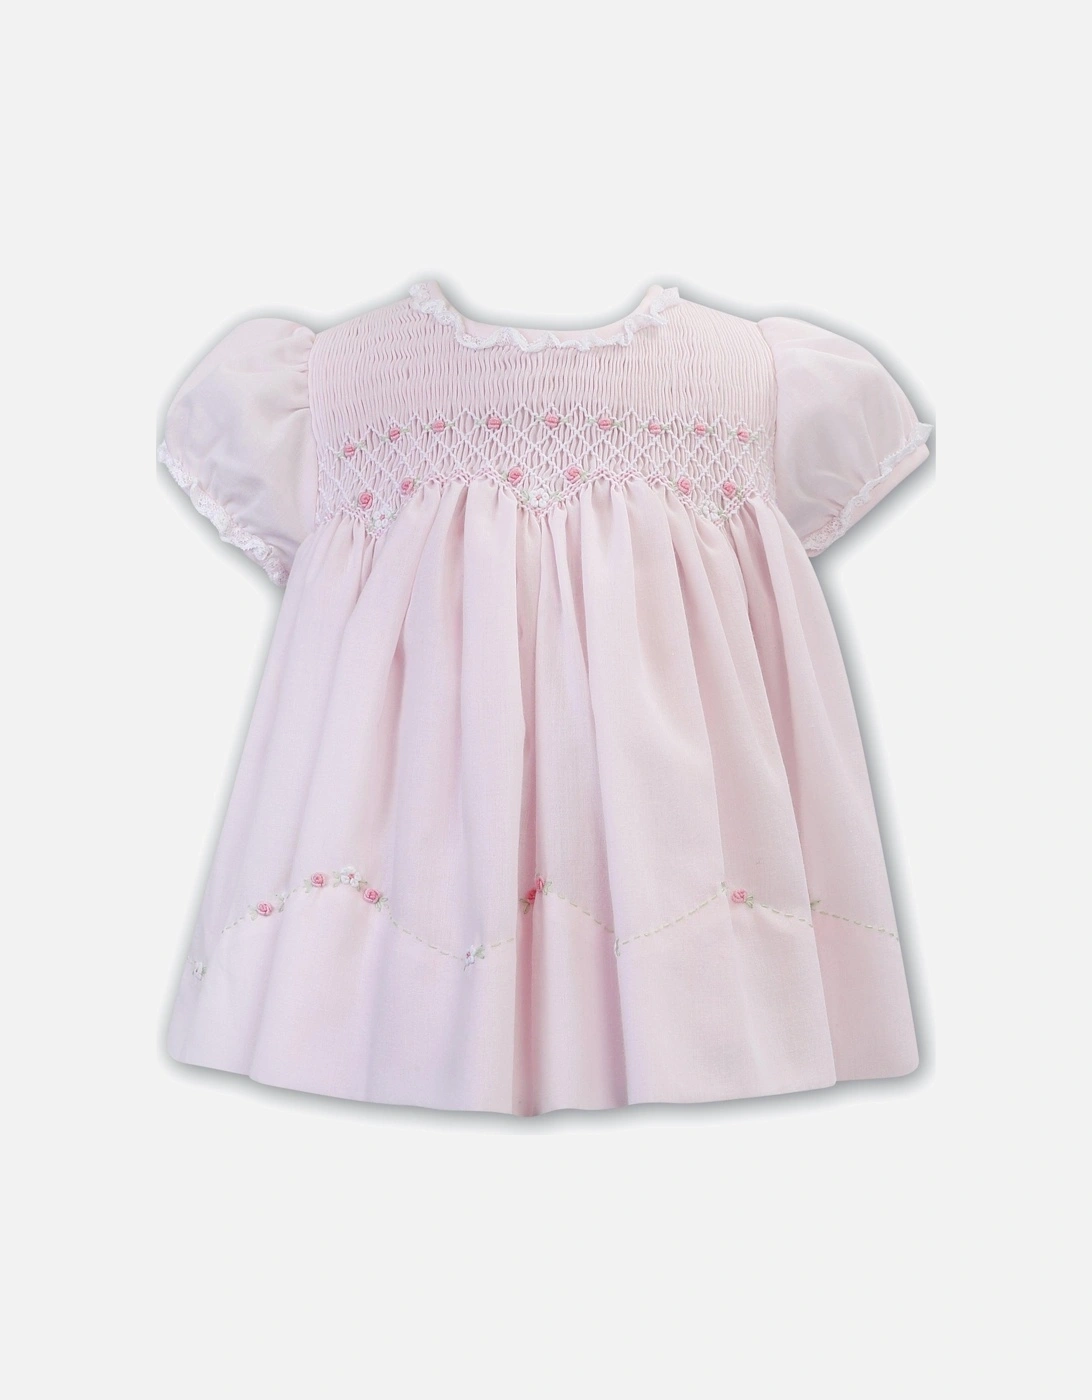 Baby Girls Pink Smocked Dress, 2 of 1